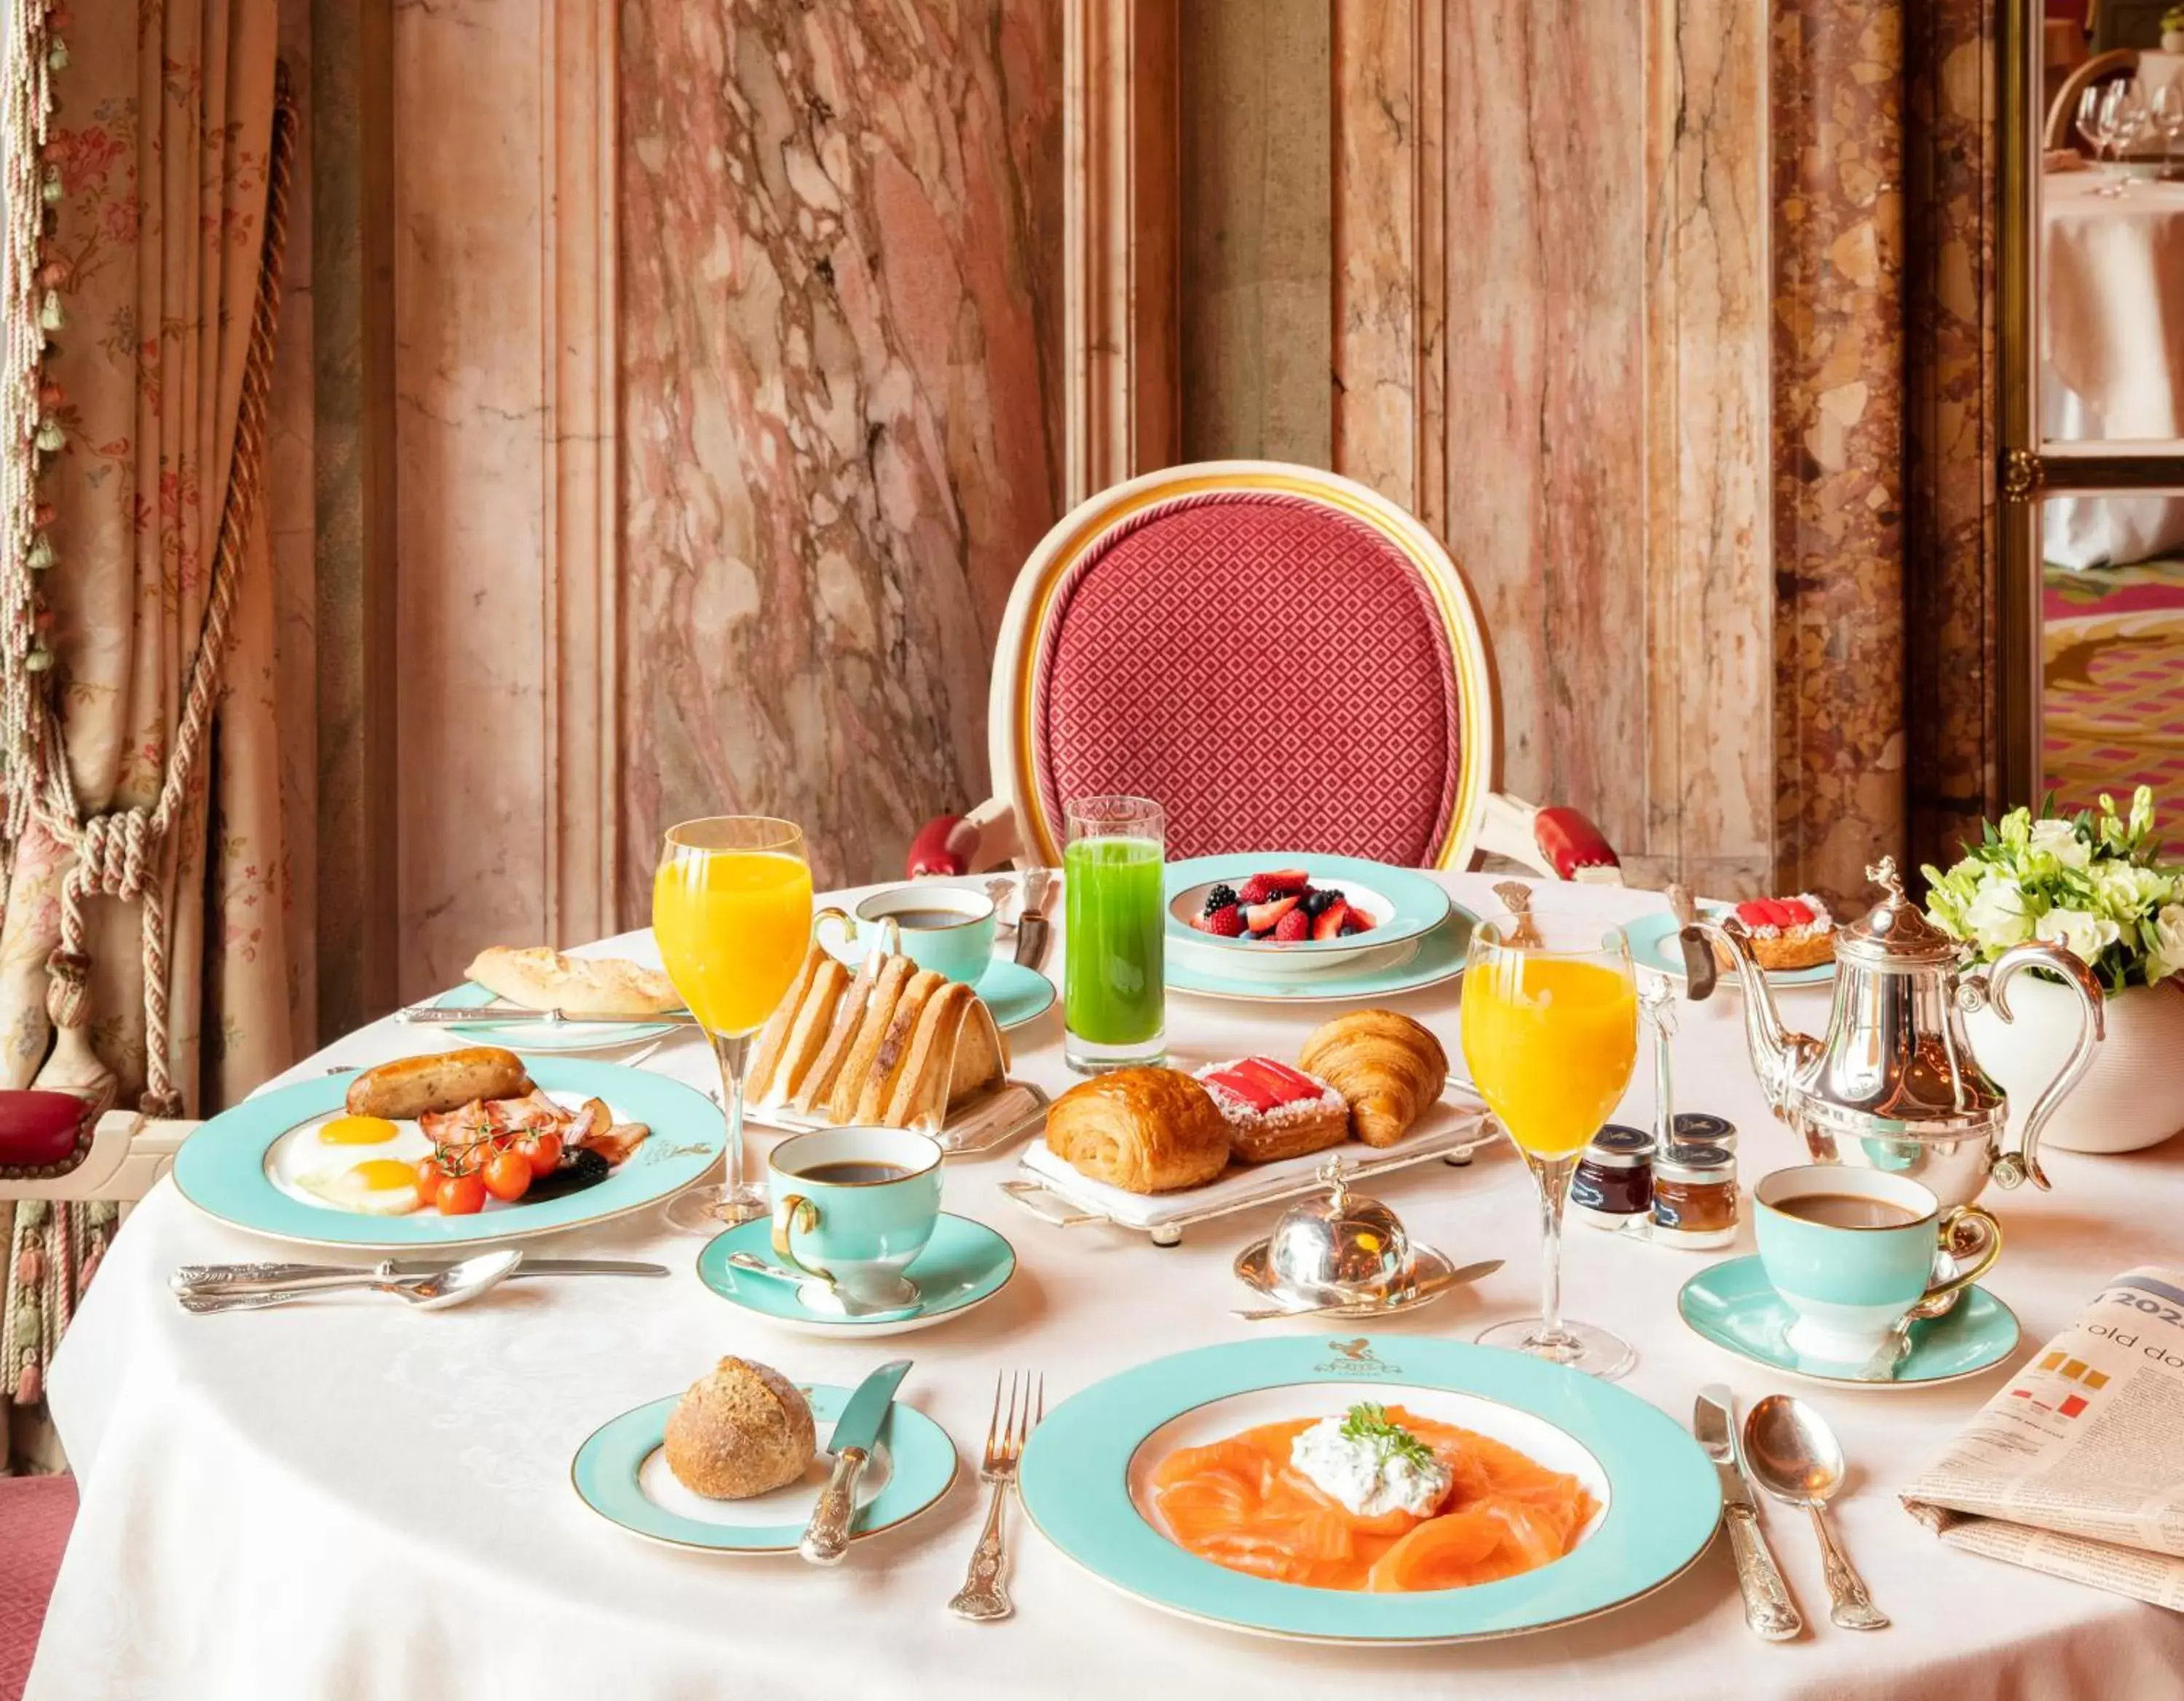 Breakfast in The Ritz London